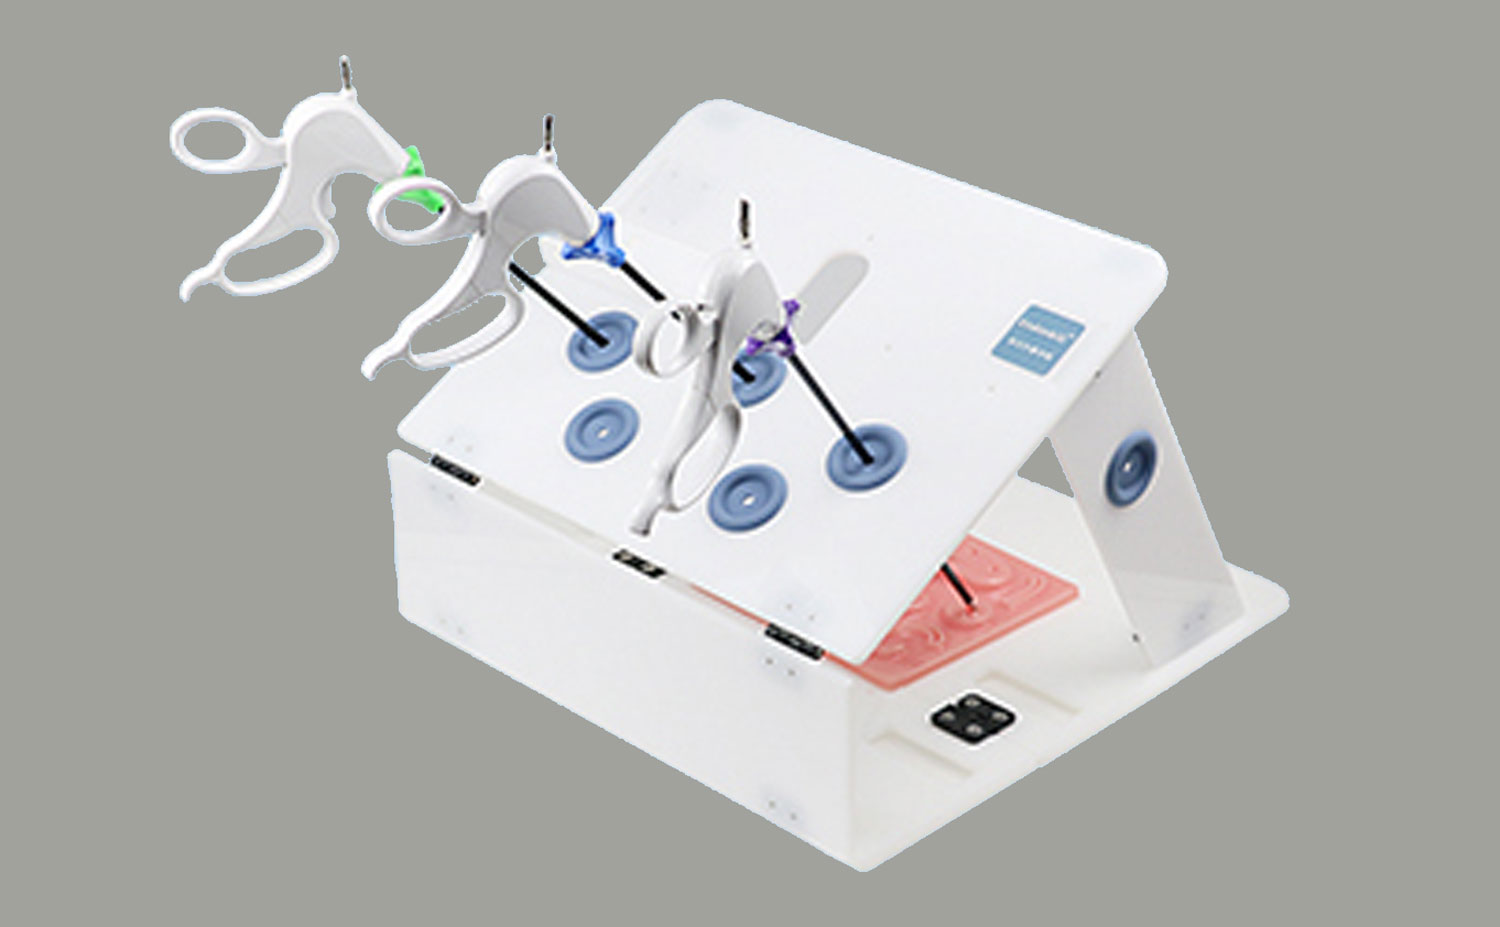 Warum sollten Sie sich für die laparoskopische Trainingsbox von Smailmedical entscheiden?